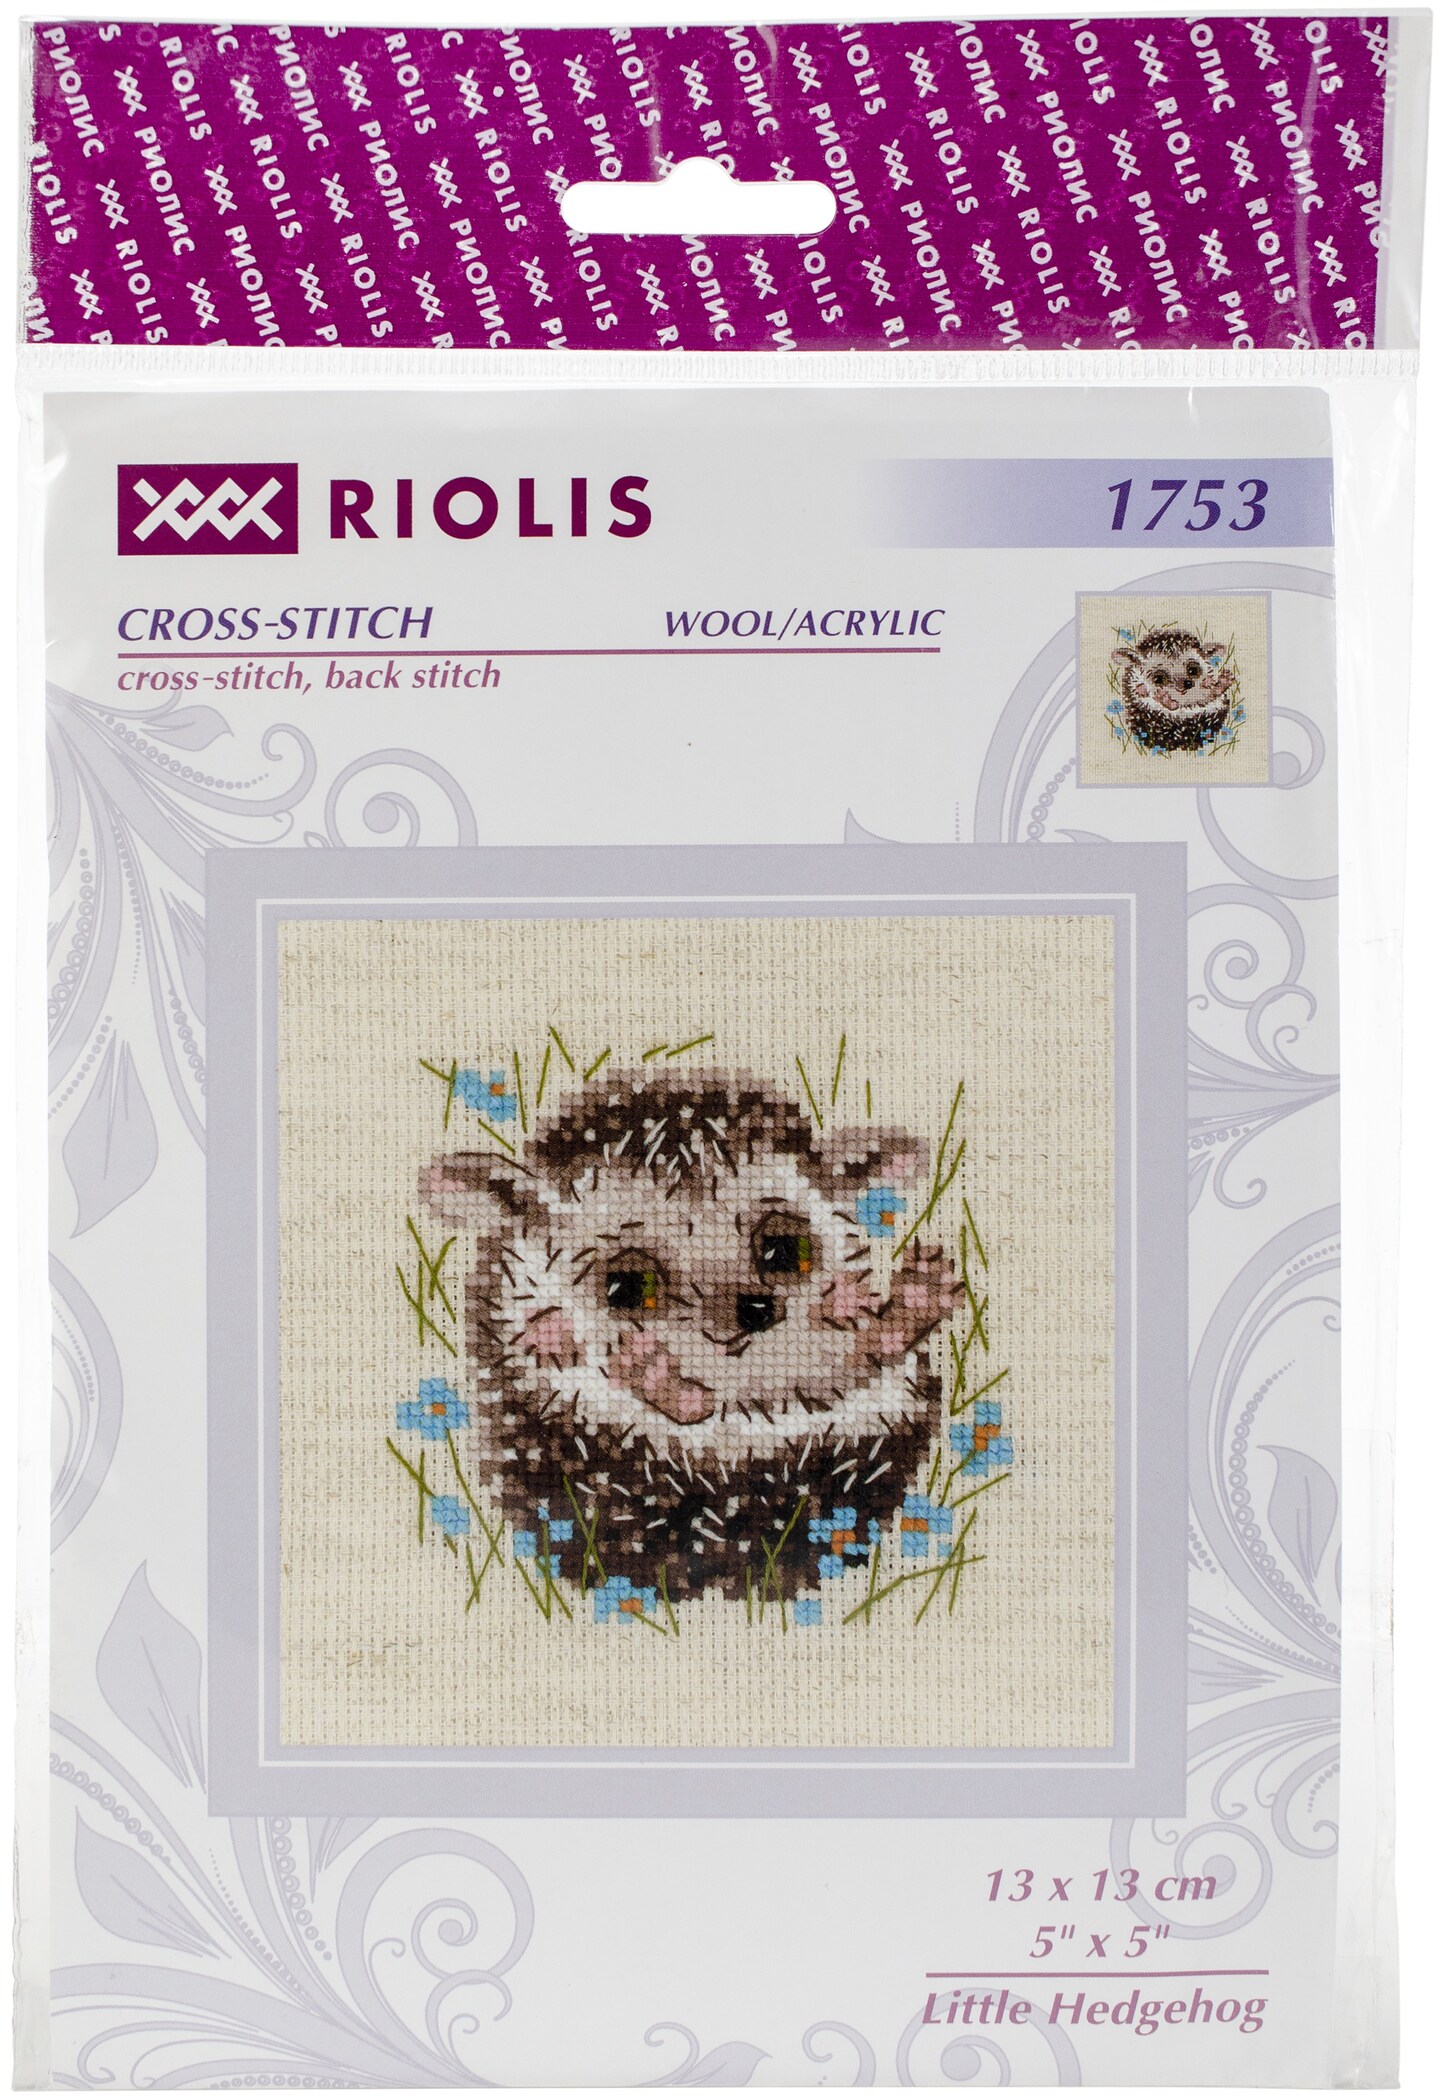 Riolis cross stitch patterns and kits